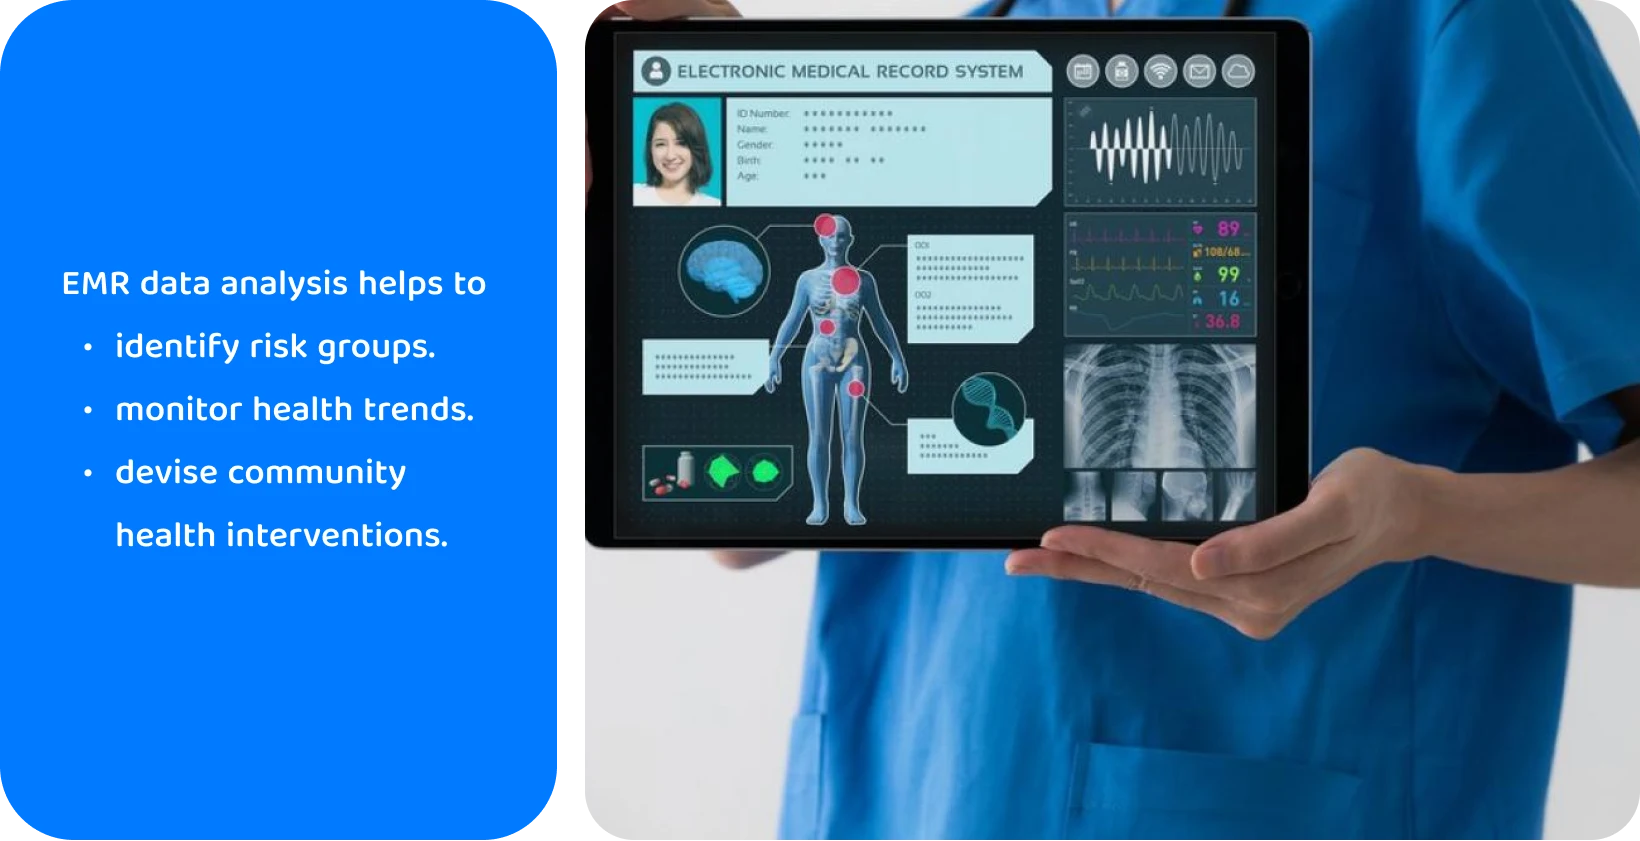 Pracownik służby zdrowia wykorzystujący tablet z systemem elektronicznej dokumentacji medycznej do analizy danych o stanie zdrowia pacjenta.